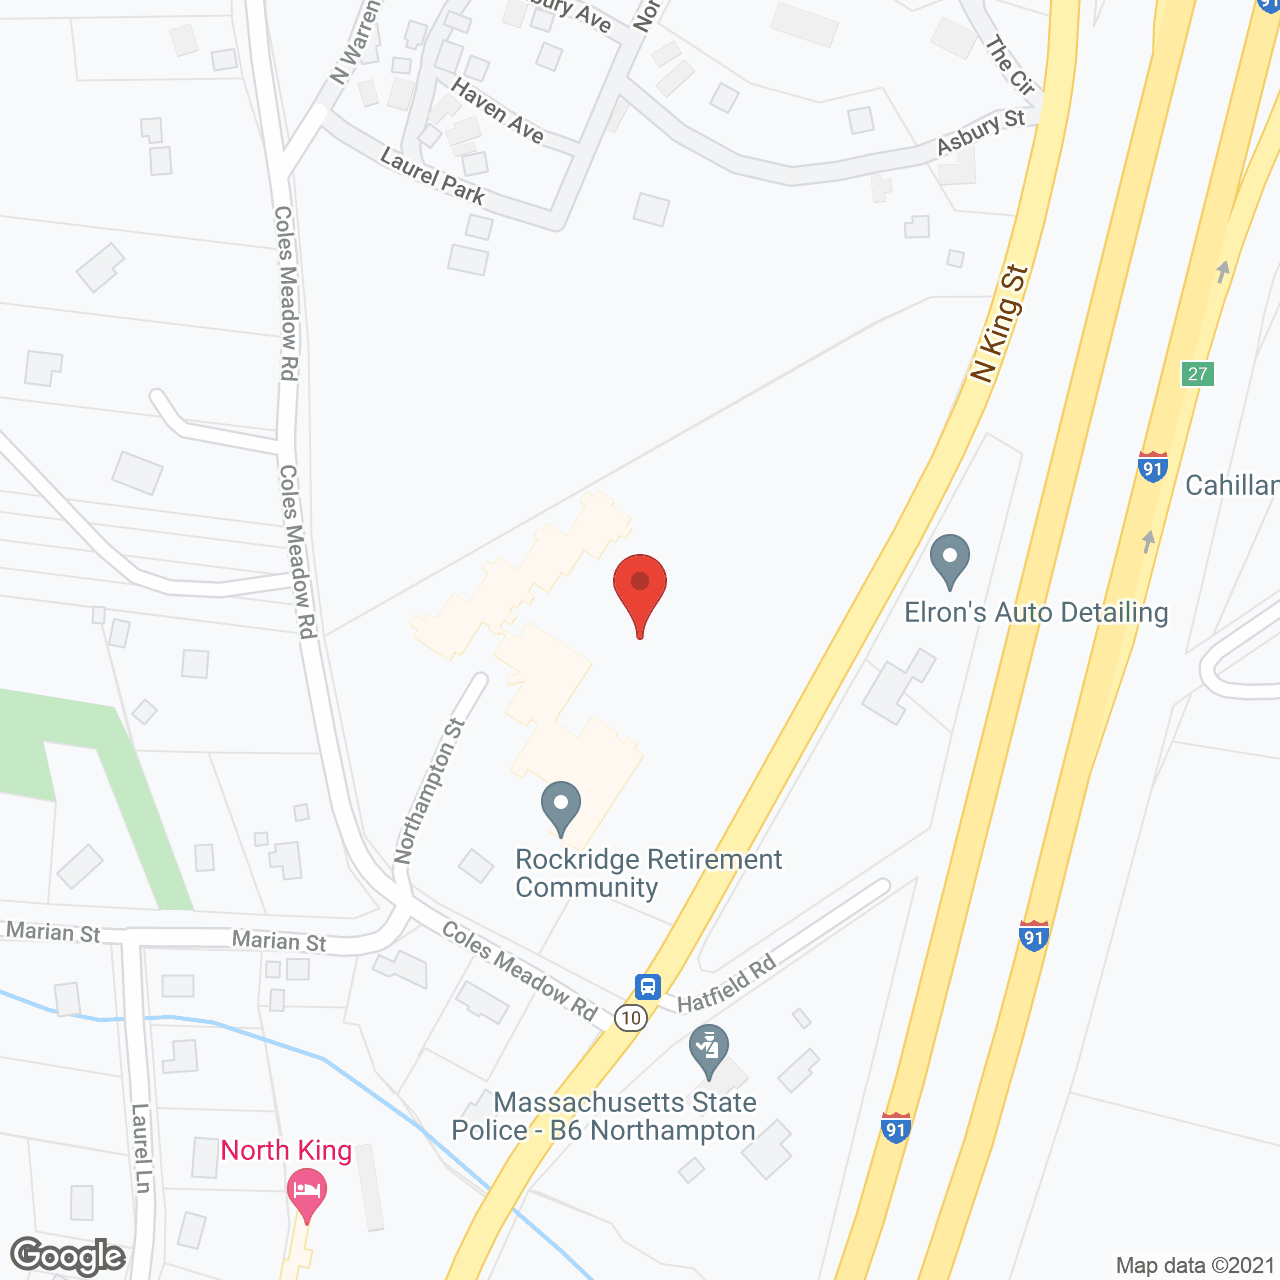 Rockridge in google map